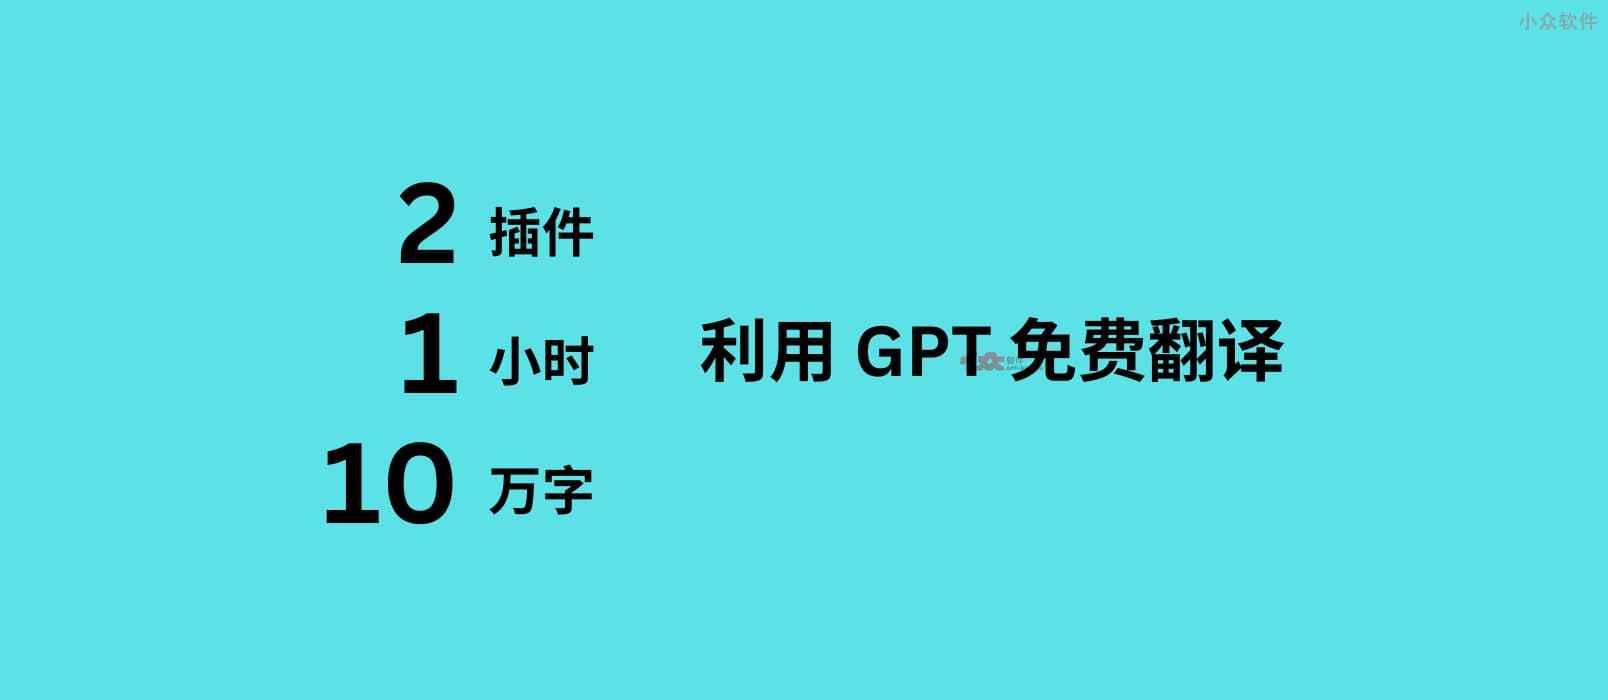 2 款 GPT 插件，不花钱，一个小时免费翻译 10 万字，导出成册